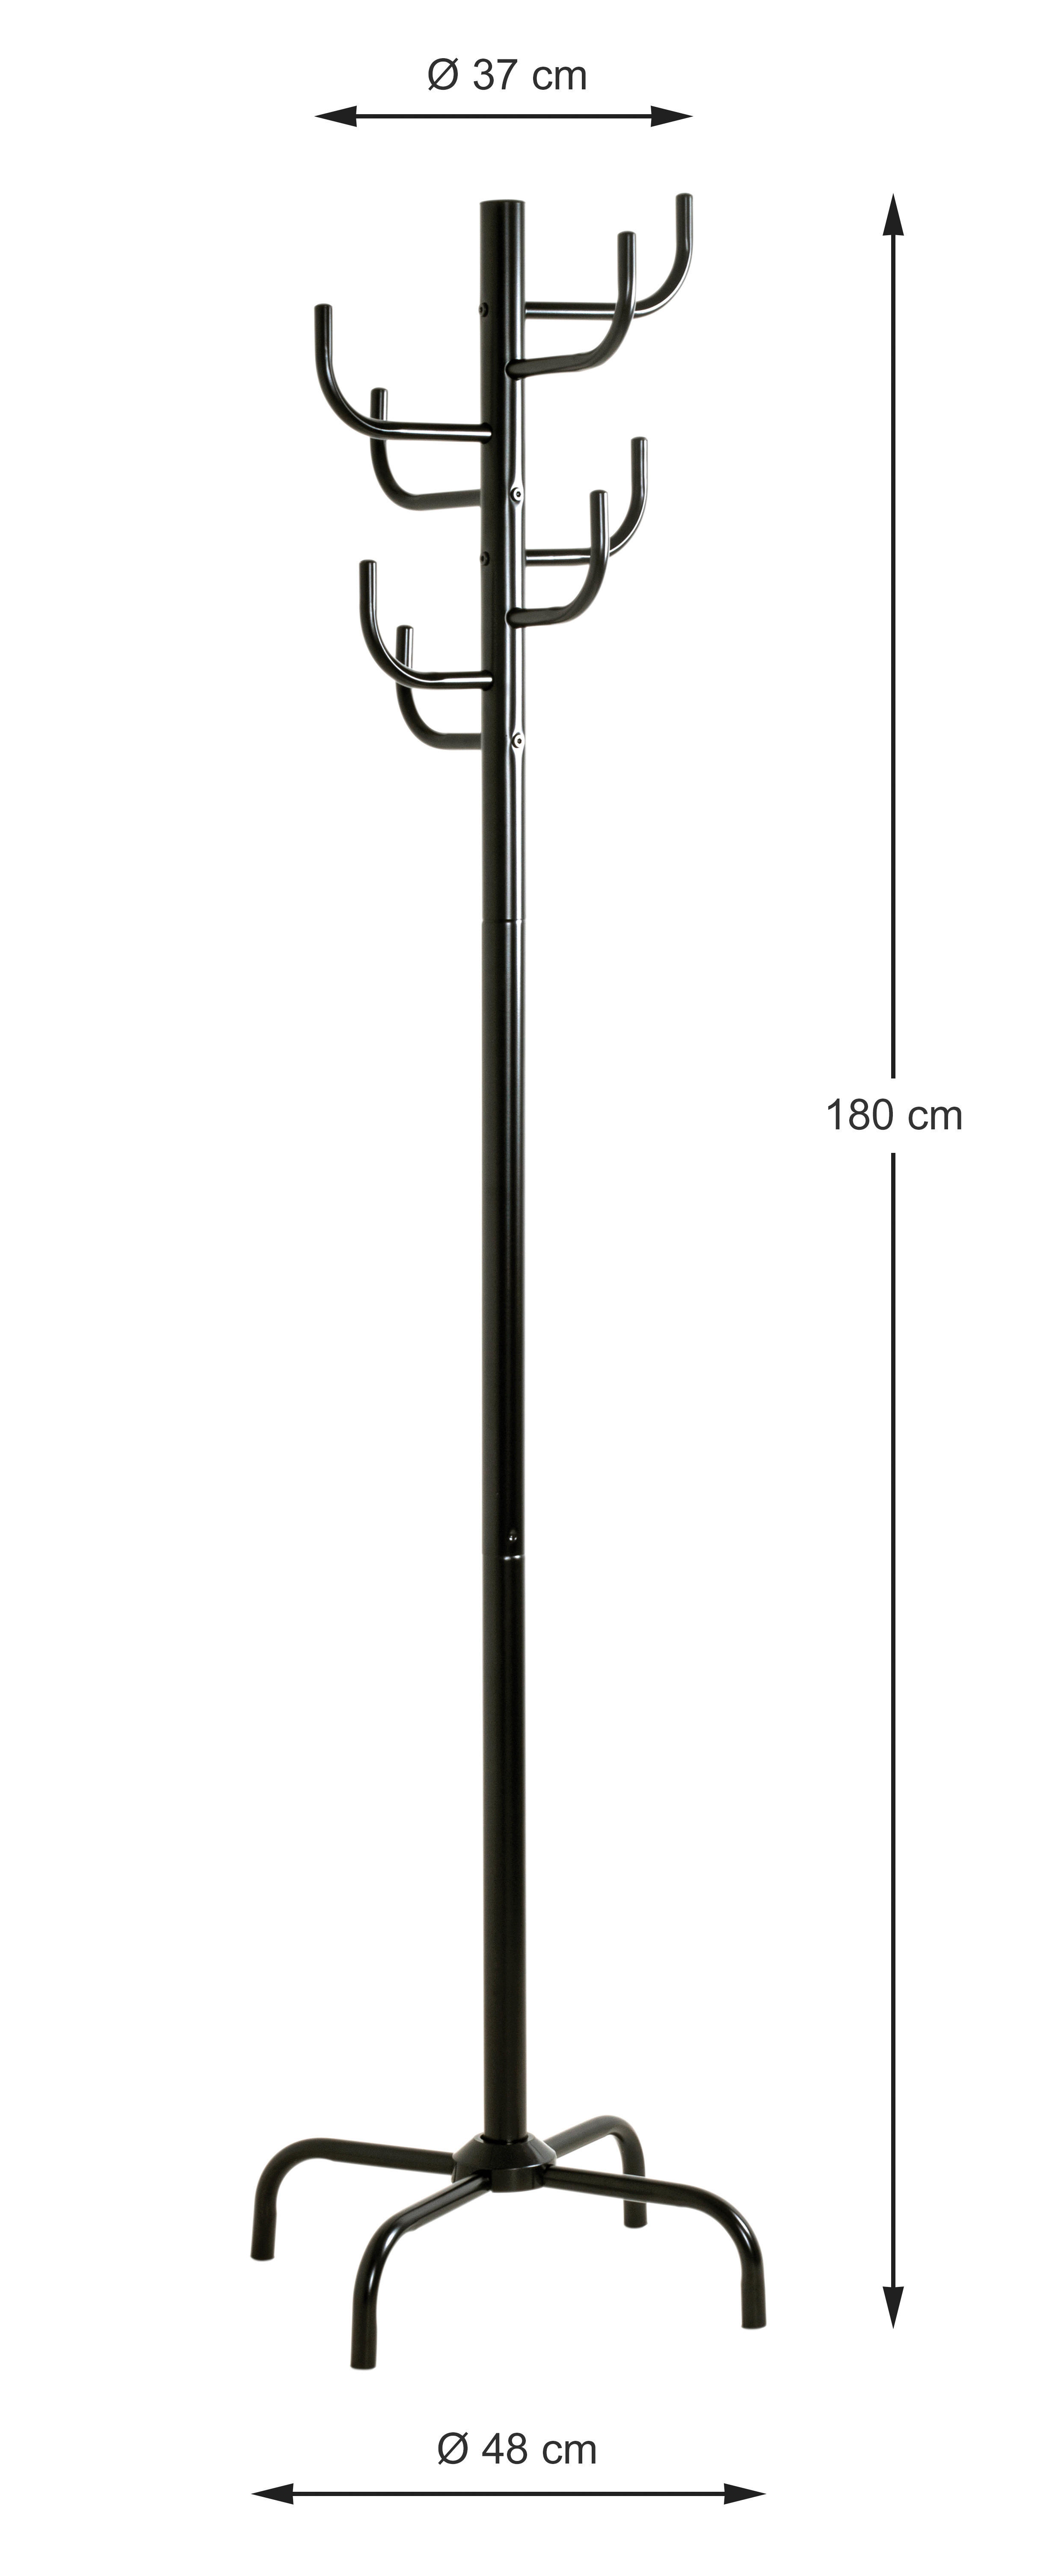 Garderobenständer  schwarz lackiert H/D: ca. 180x48 cm Cactus_Garderobenständer 43100 - schwarz (48,00/180,00cm)